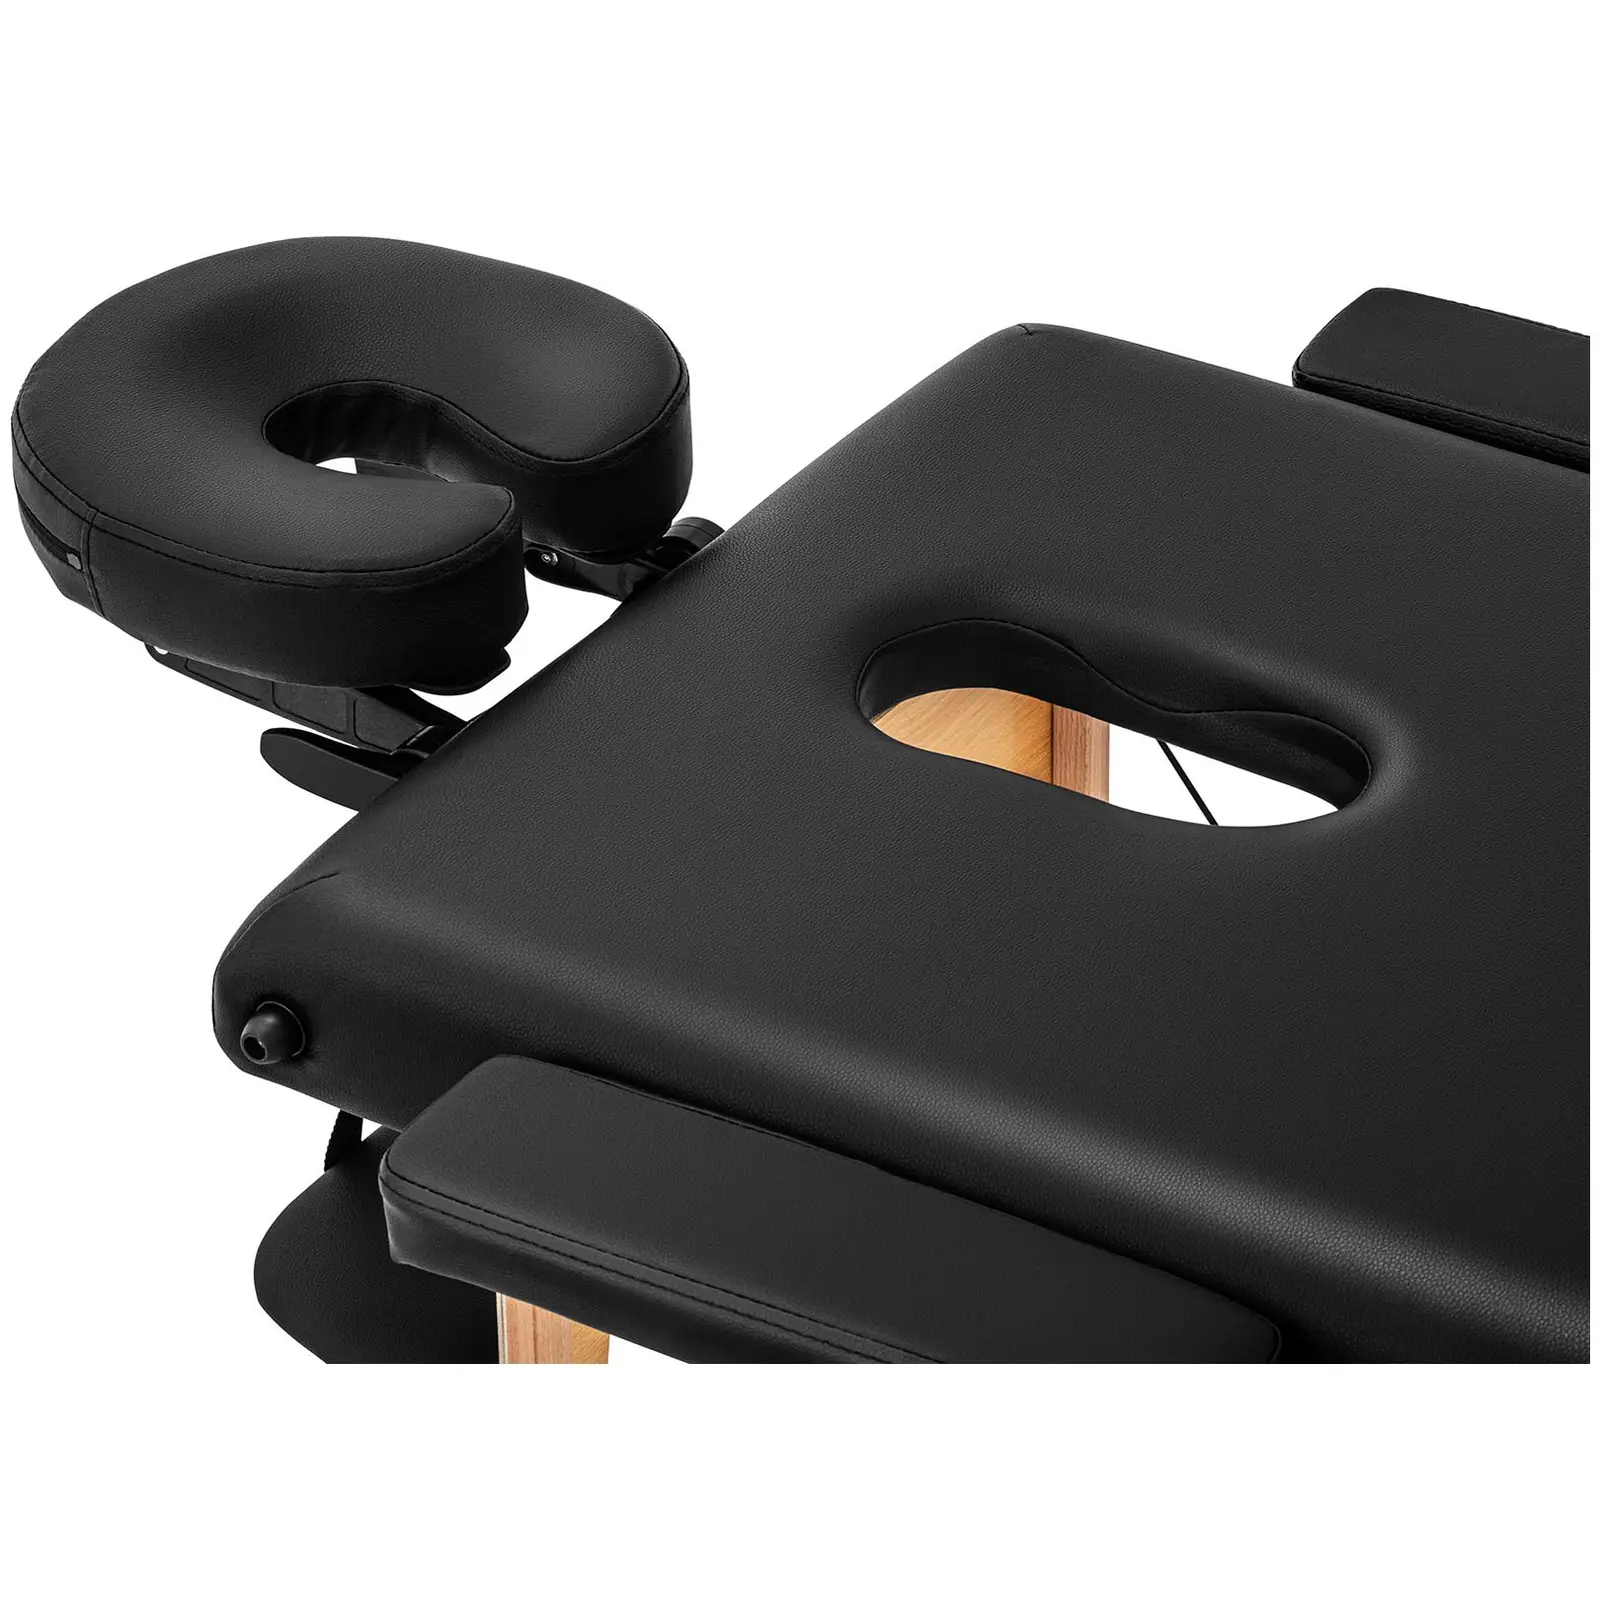 B-zboží Skládací masážní lehátko - extra široké (70 cm) - naklápěcí opěrka nohou - bukové dřevo - černá